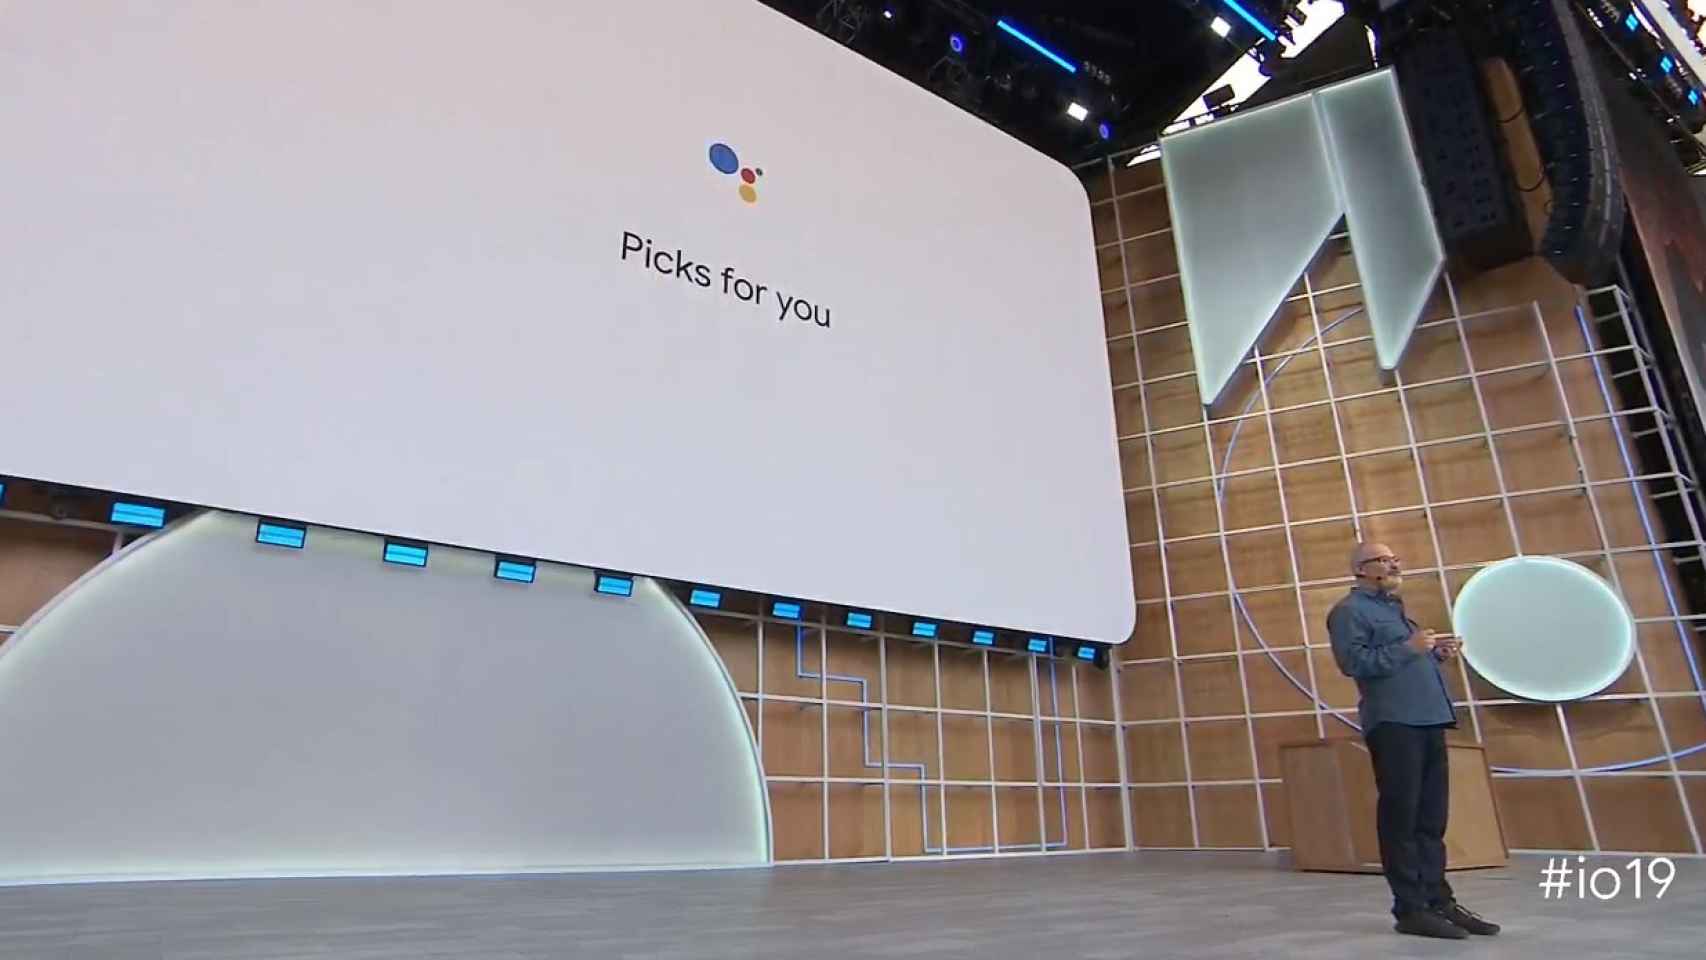 Las novedades del asistente de Google empiezan a llegar a Android